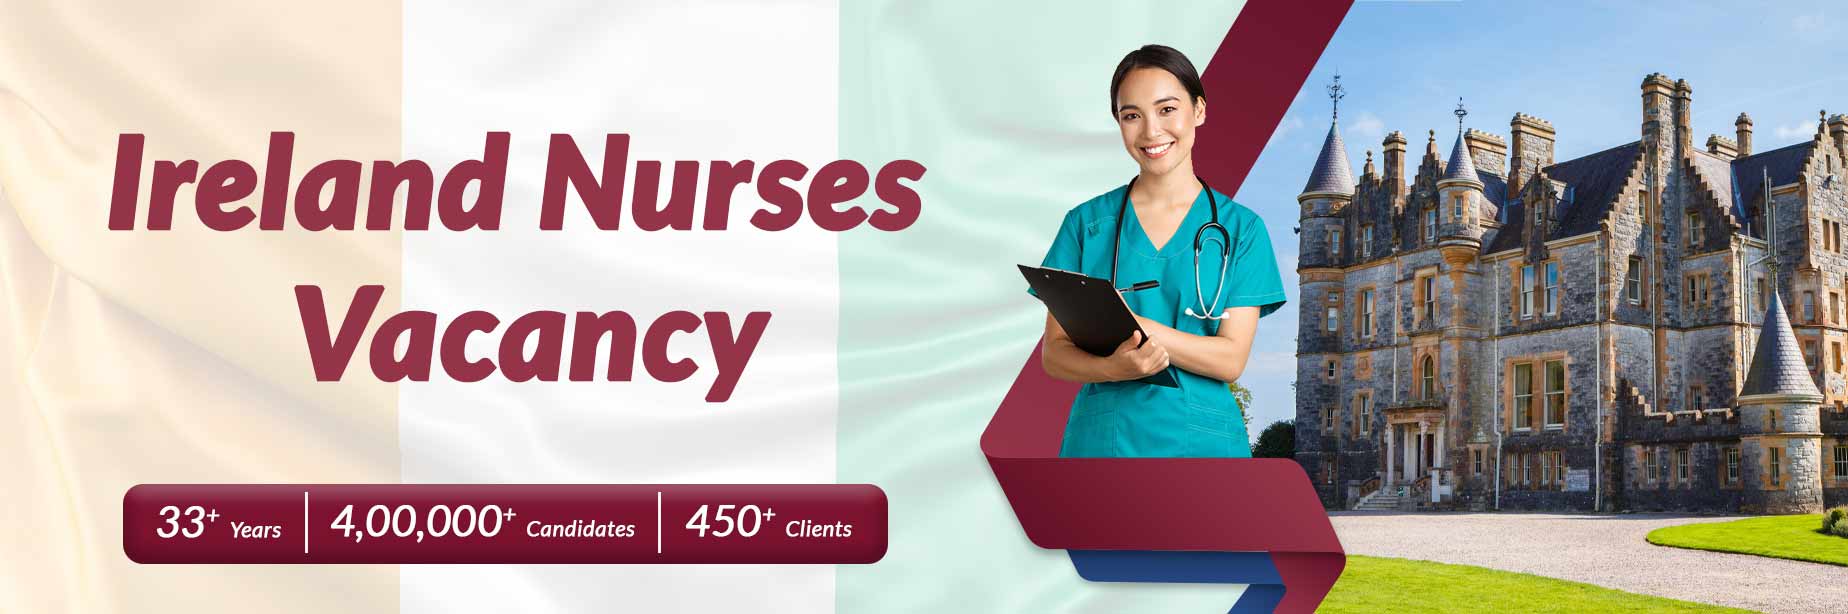 ireland nurses vacancy